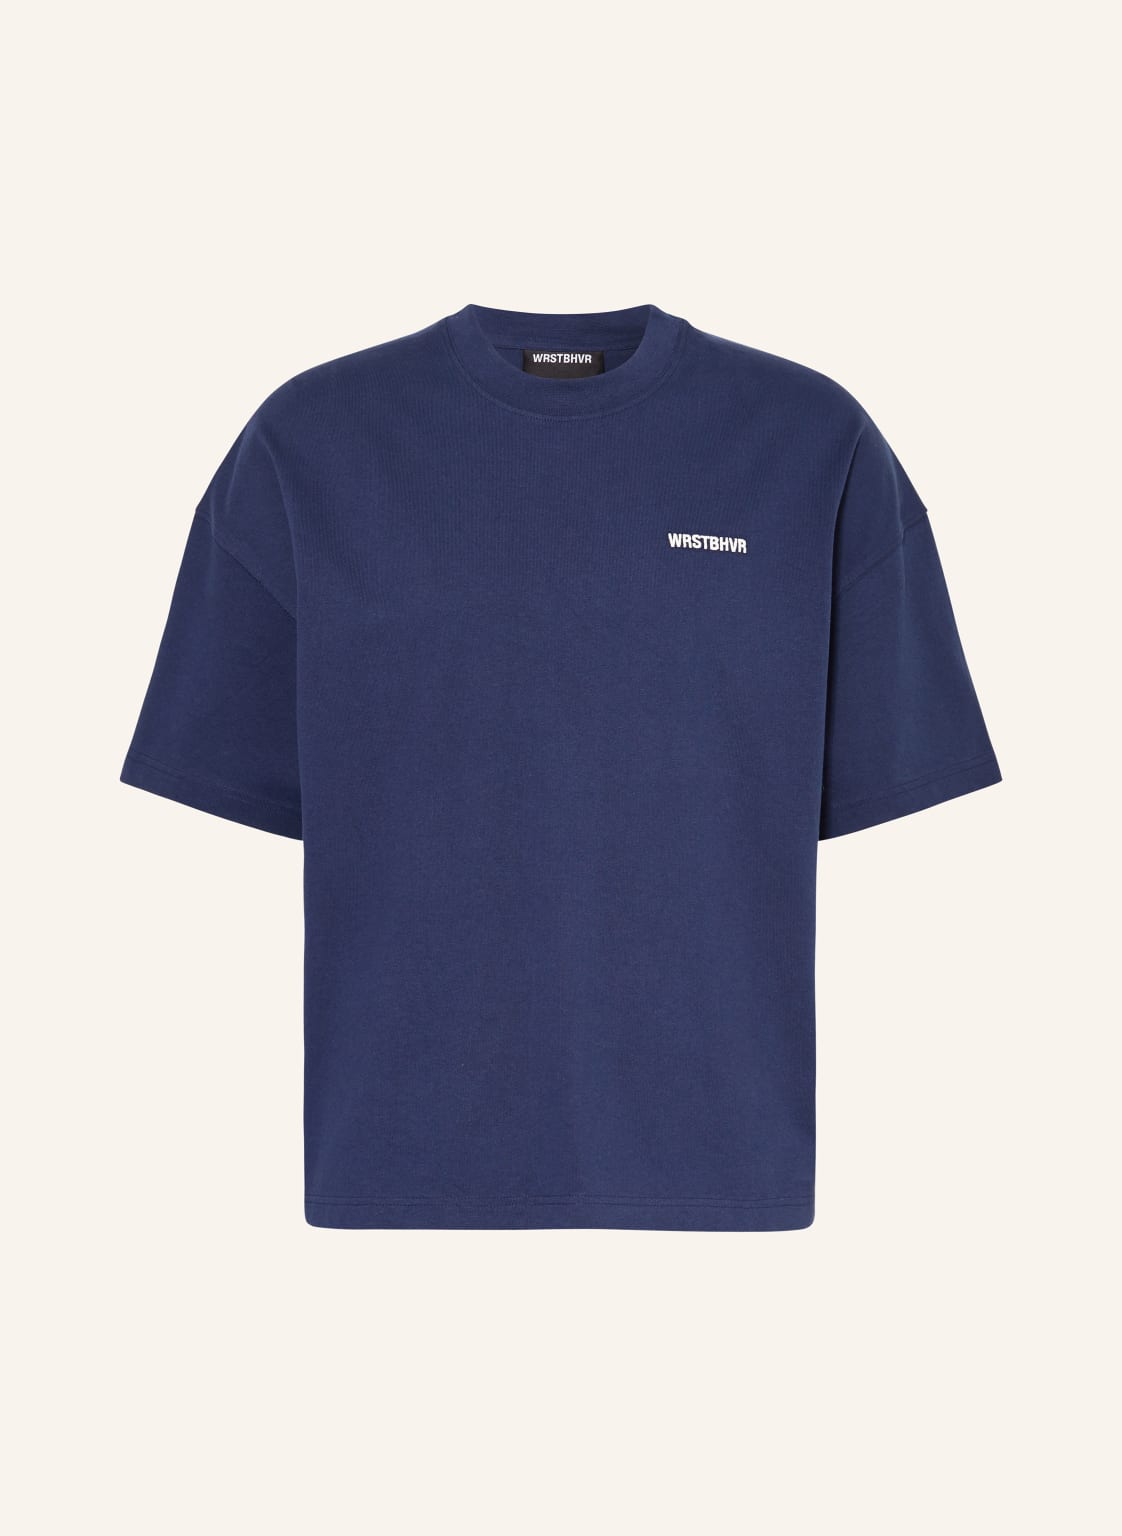 Wrstbhvr T-Shirt Dejo blau von WRSTBHVR